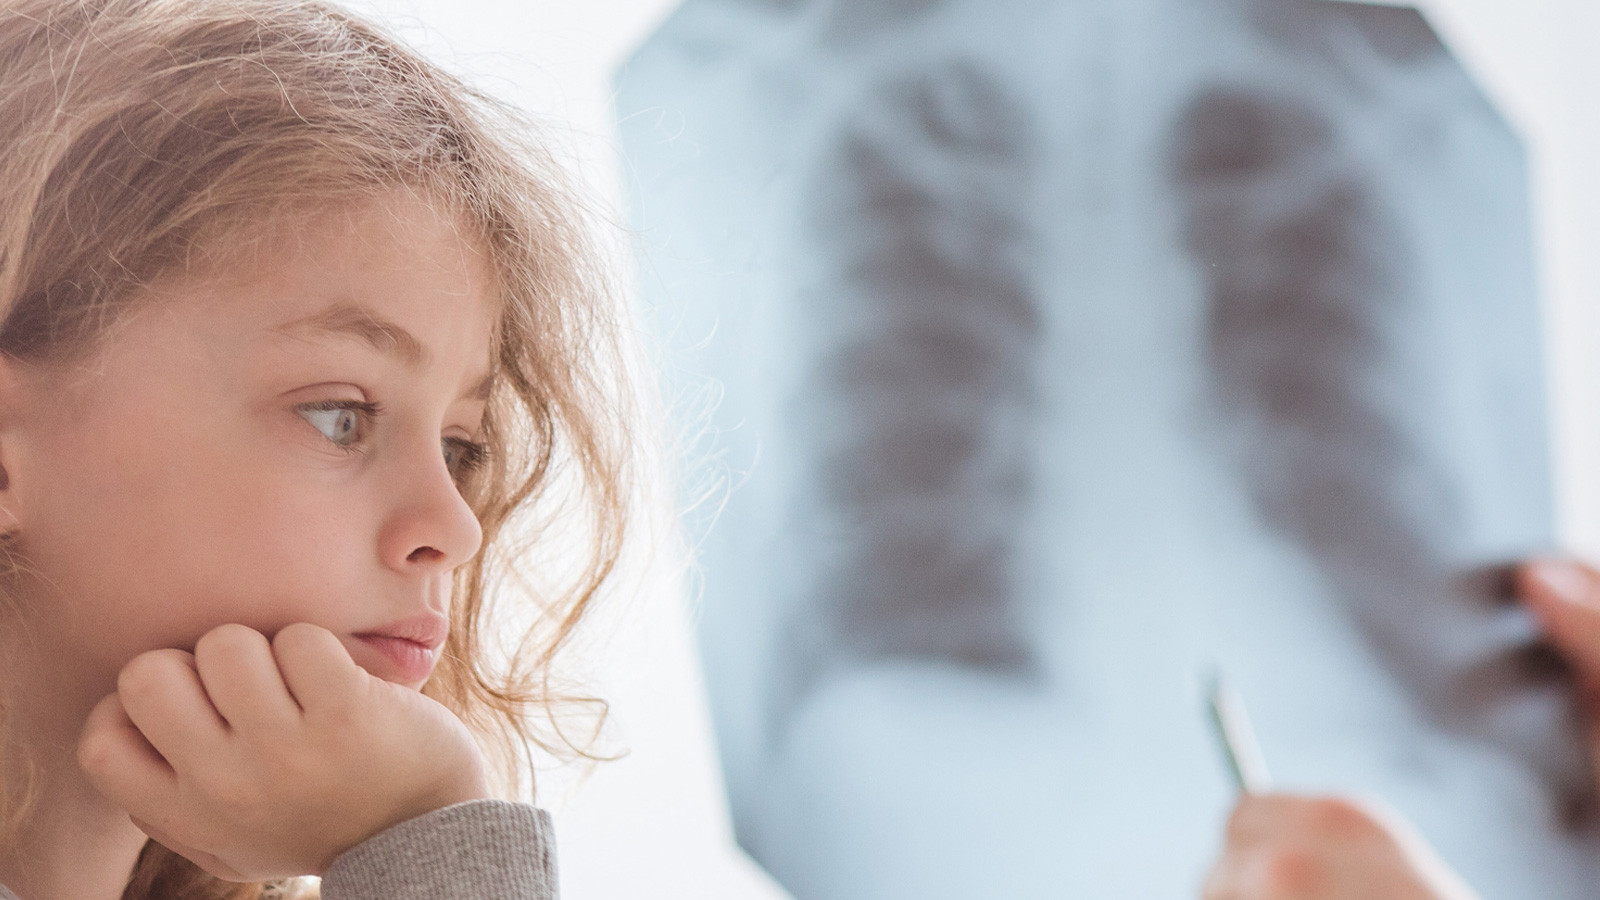 Ailede anne, baba ve kardeşte akciğer kanseri görüldüyse bu kanser çeşidine yakalanma riskiniz daha fazladır.